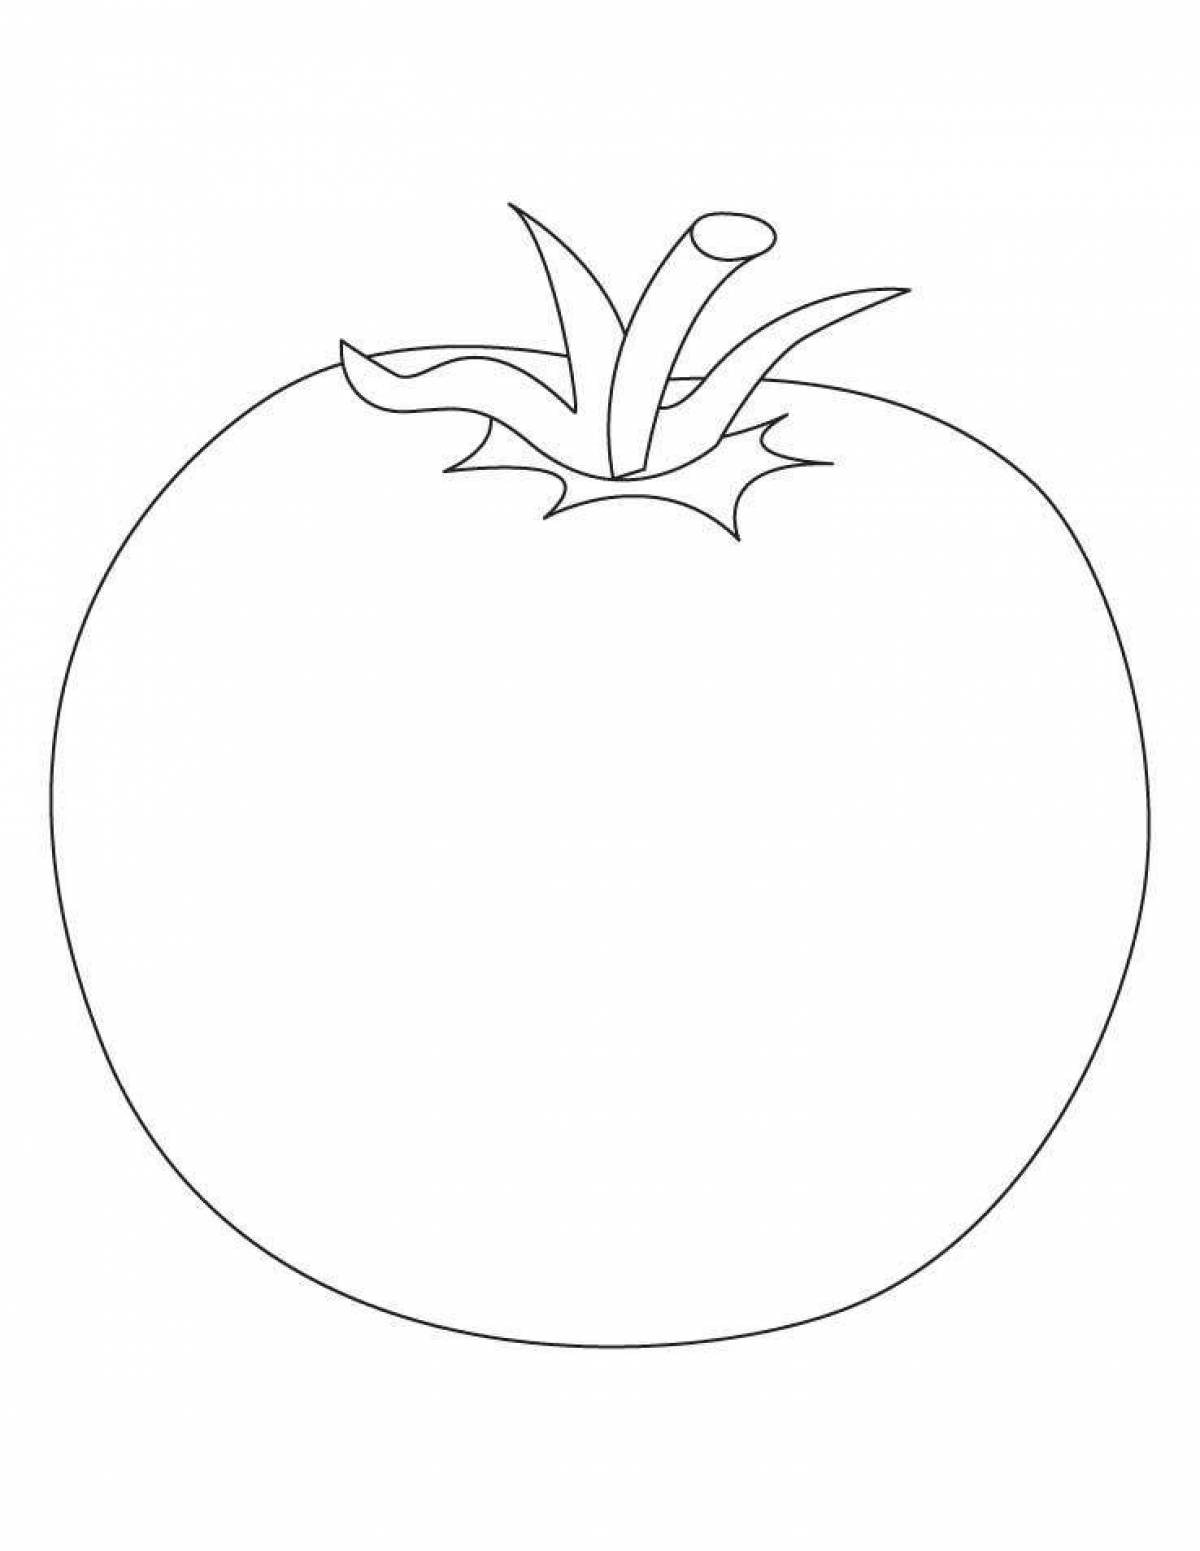 Раскраска помидор: векторные изображения и иллюстрации, которые можно скачать бесплатно | Freepik